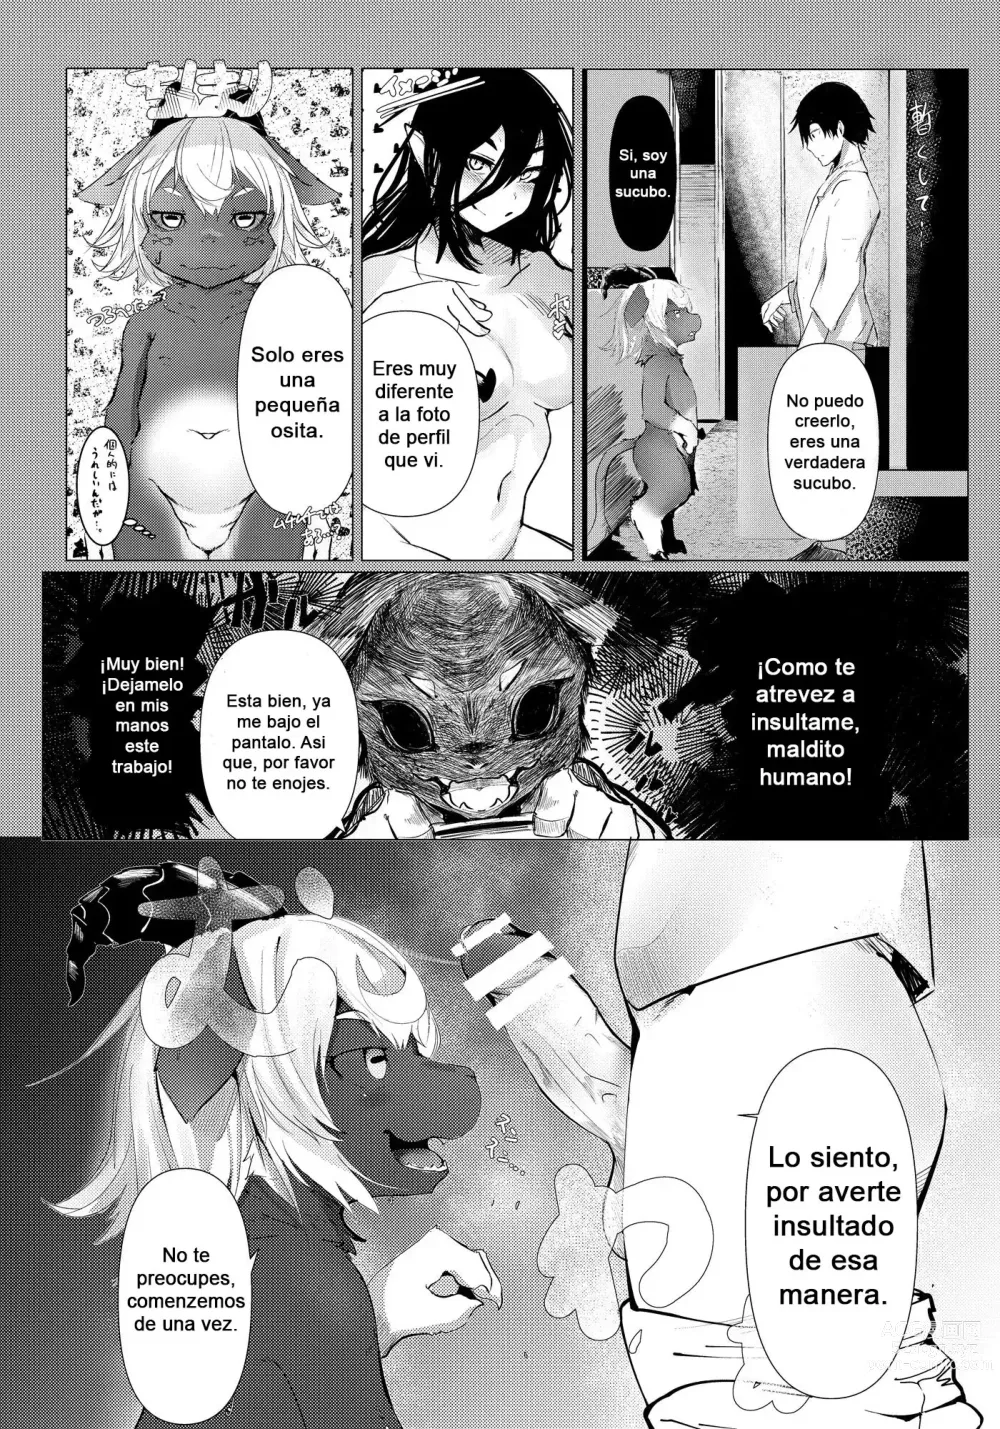 Page 4 of doujinshi Succubus no Junan